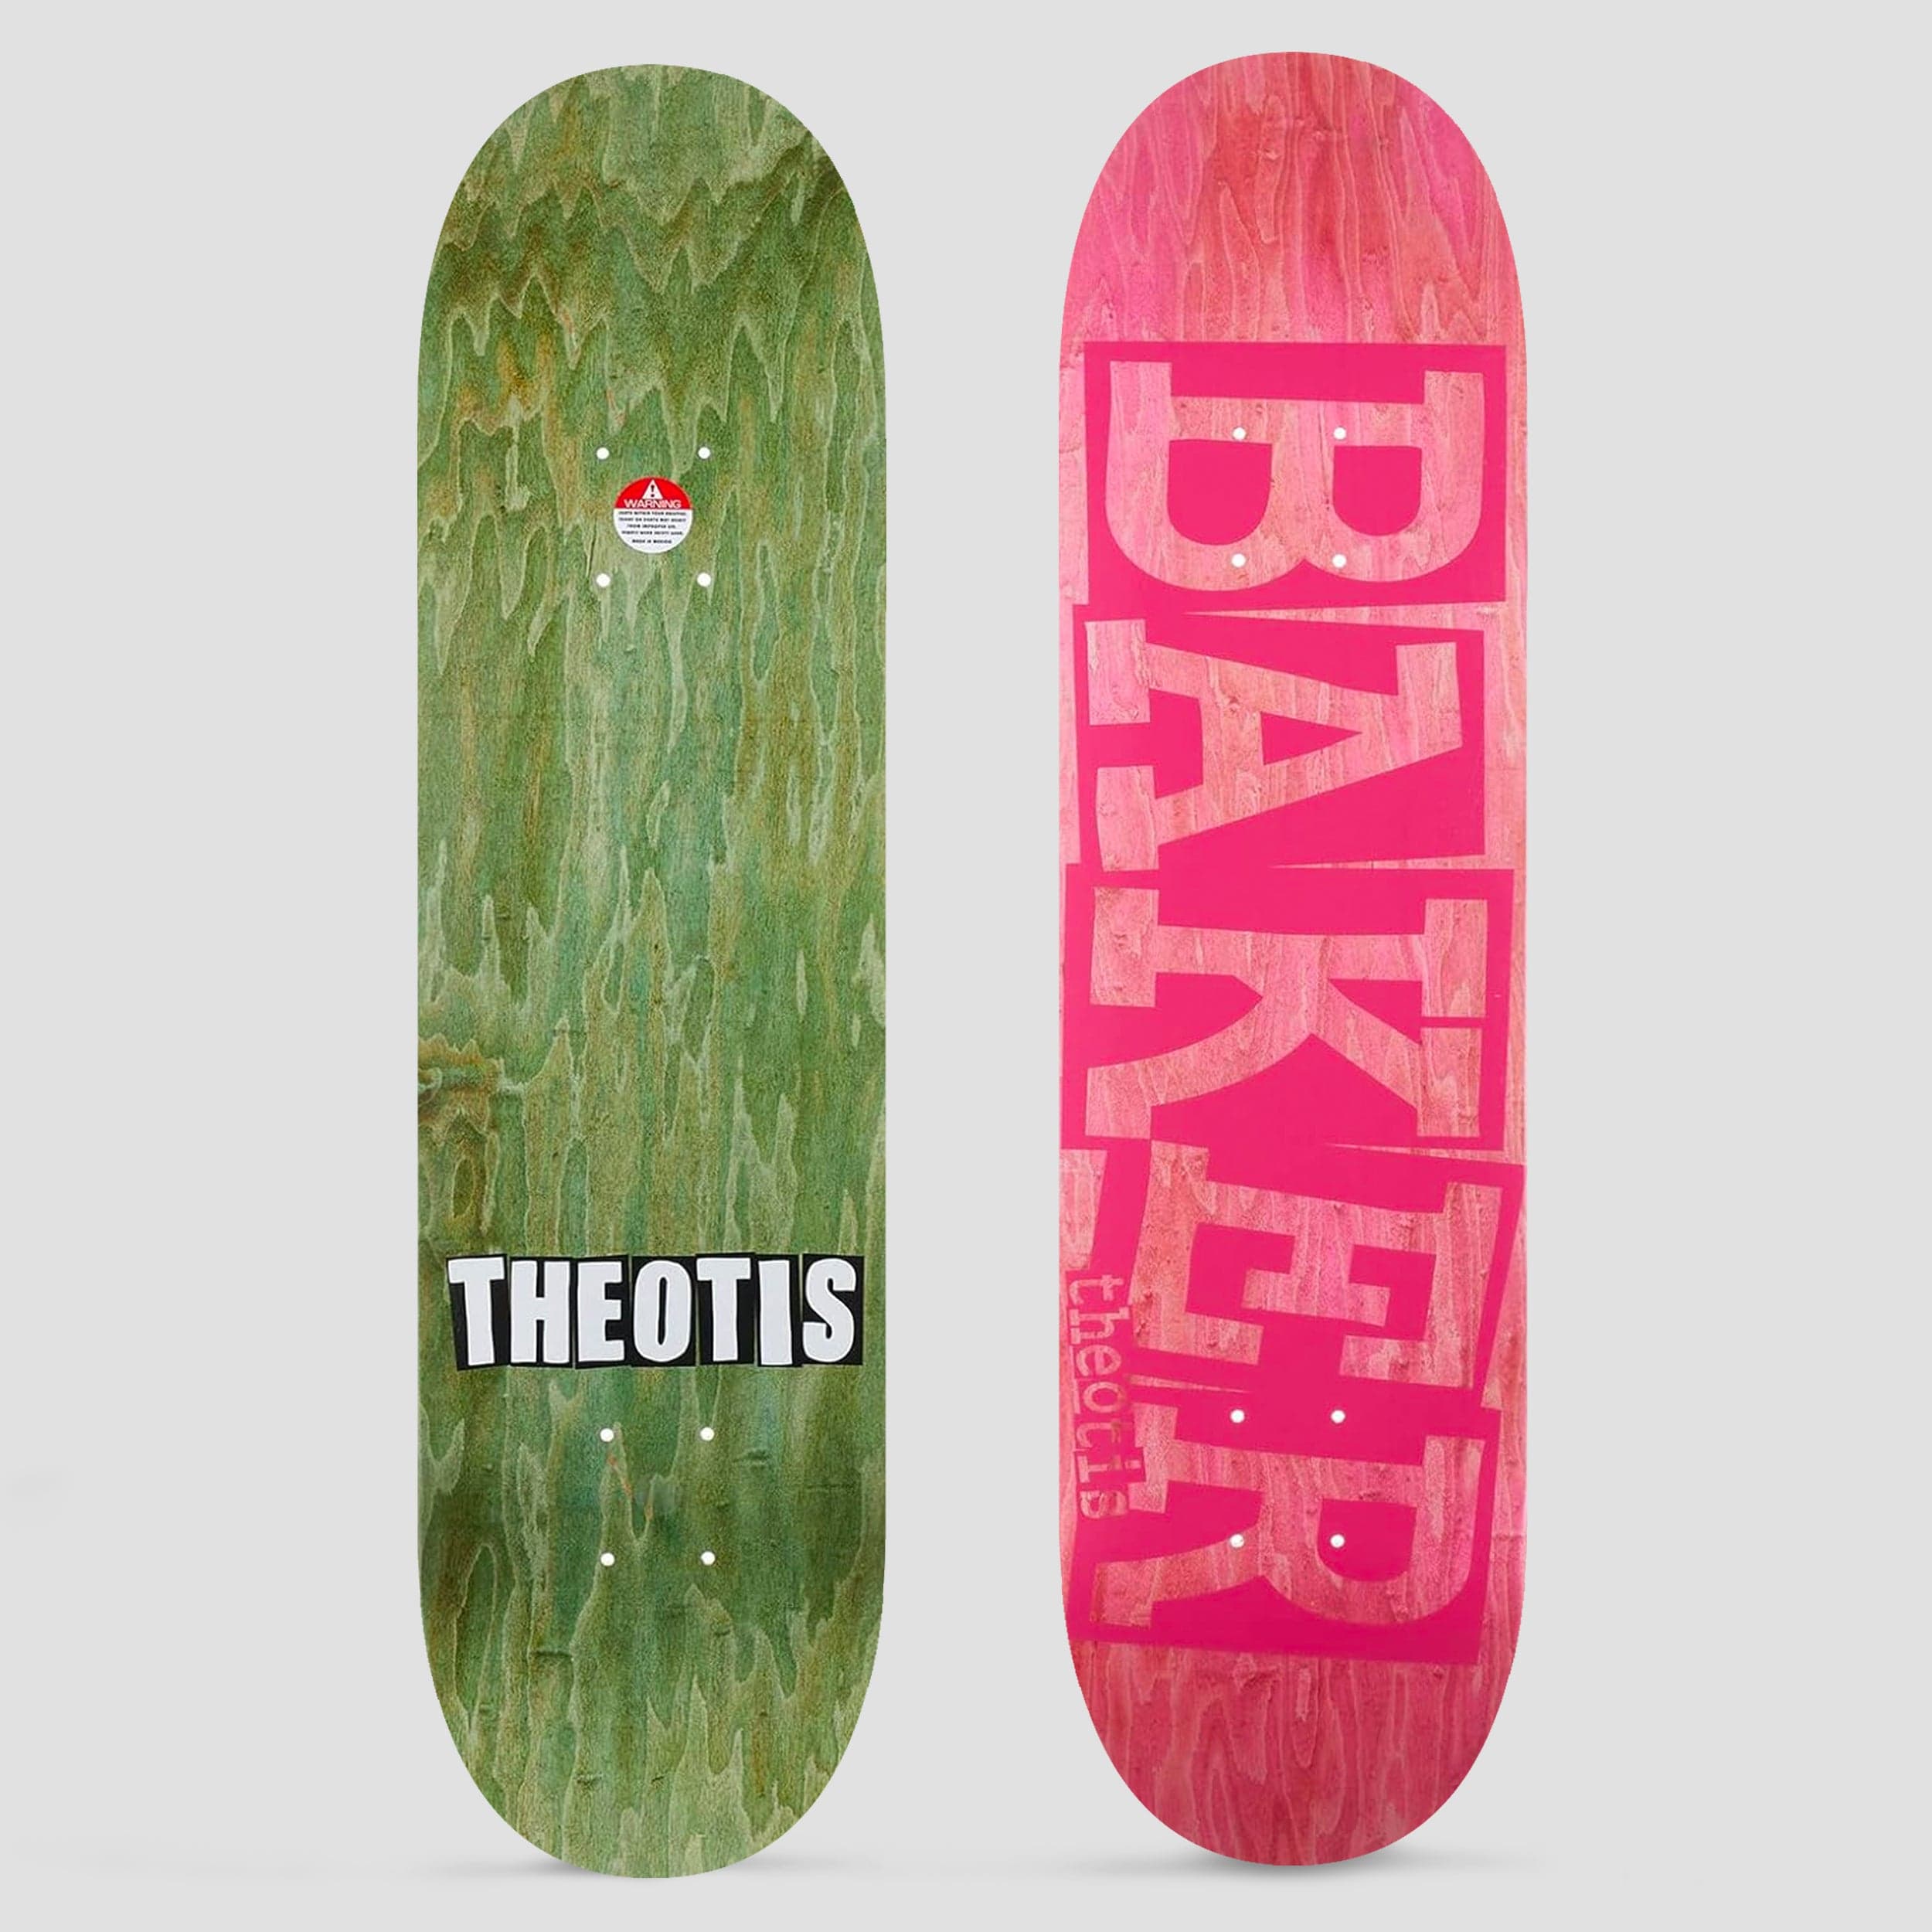 Baker 8.0 Theotis Beasley Ribbon Pink Veneer Skateboard Deck Pink